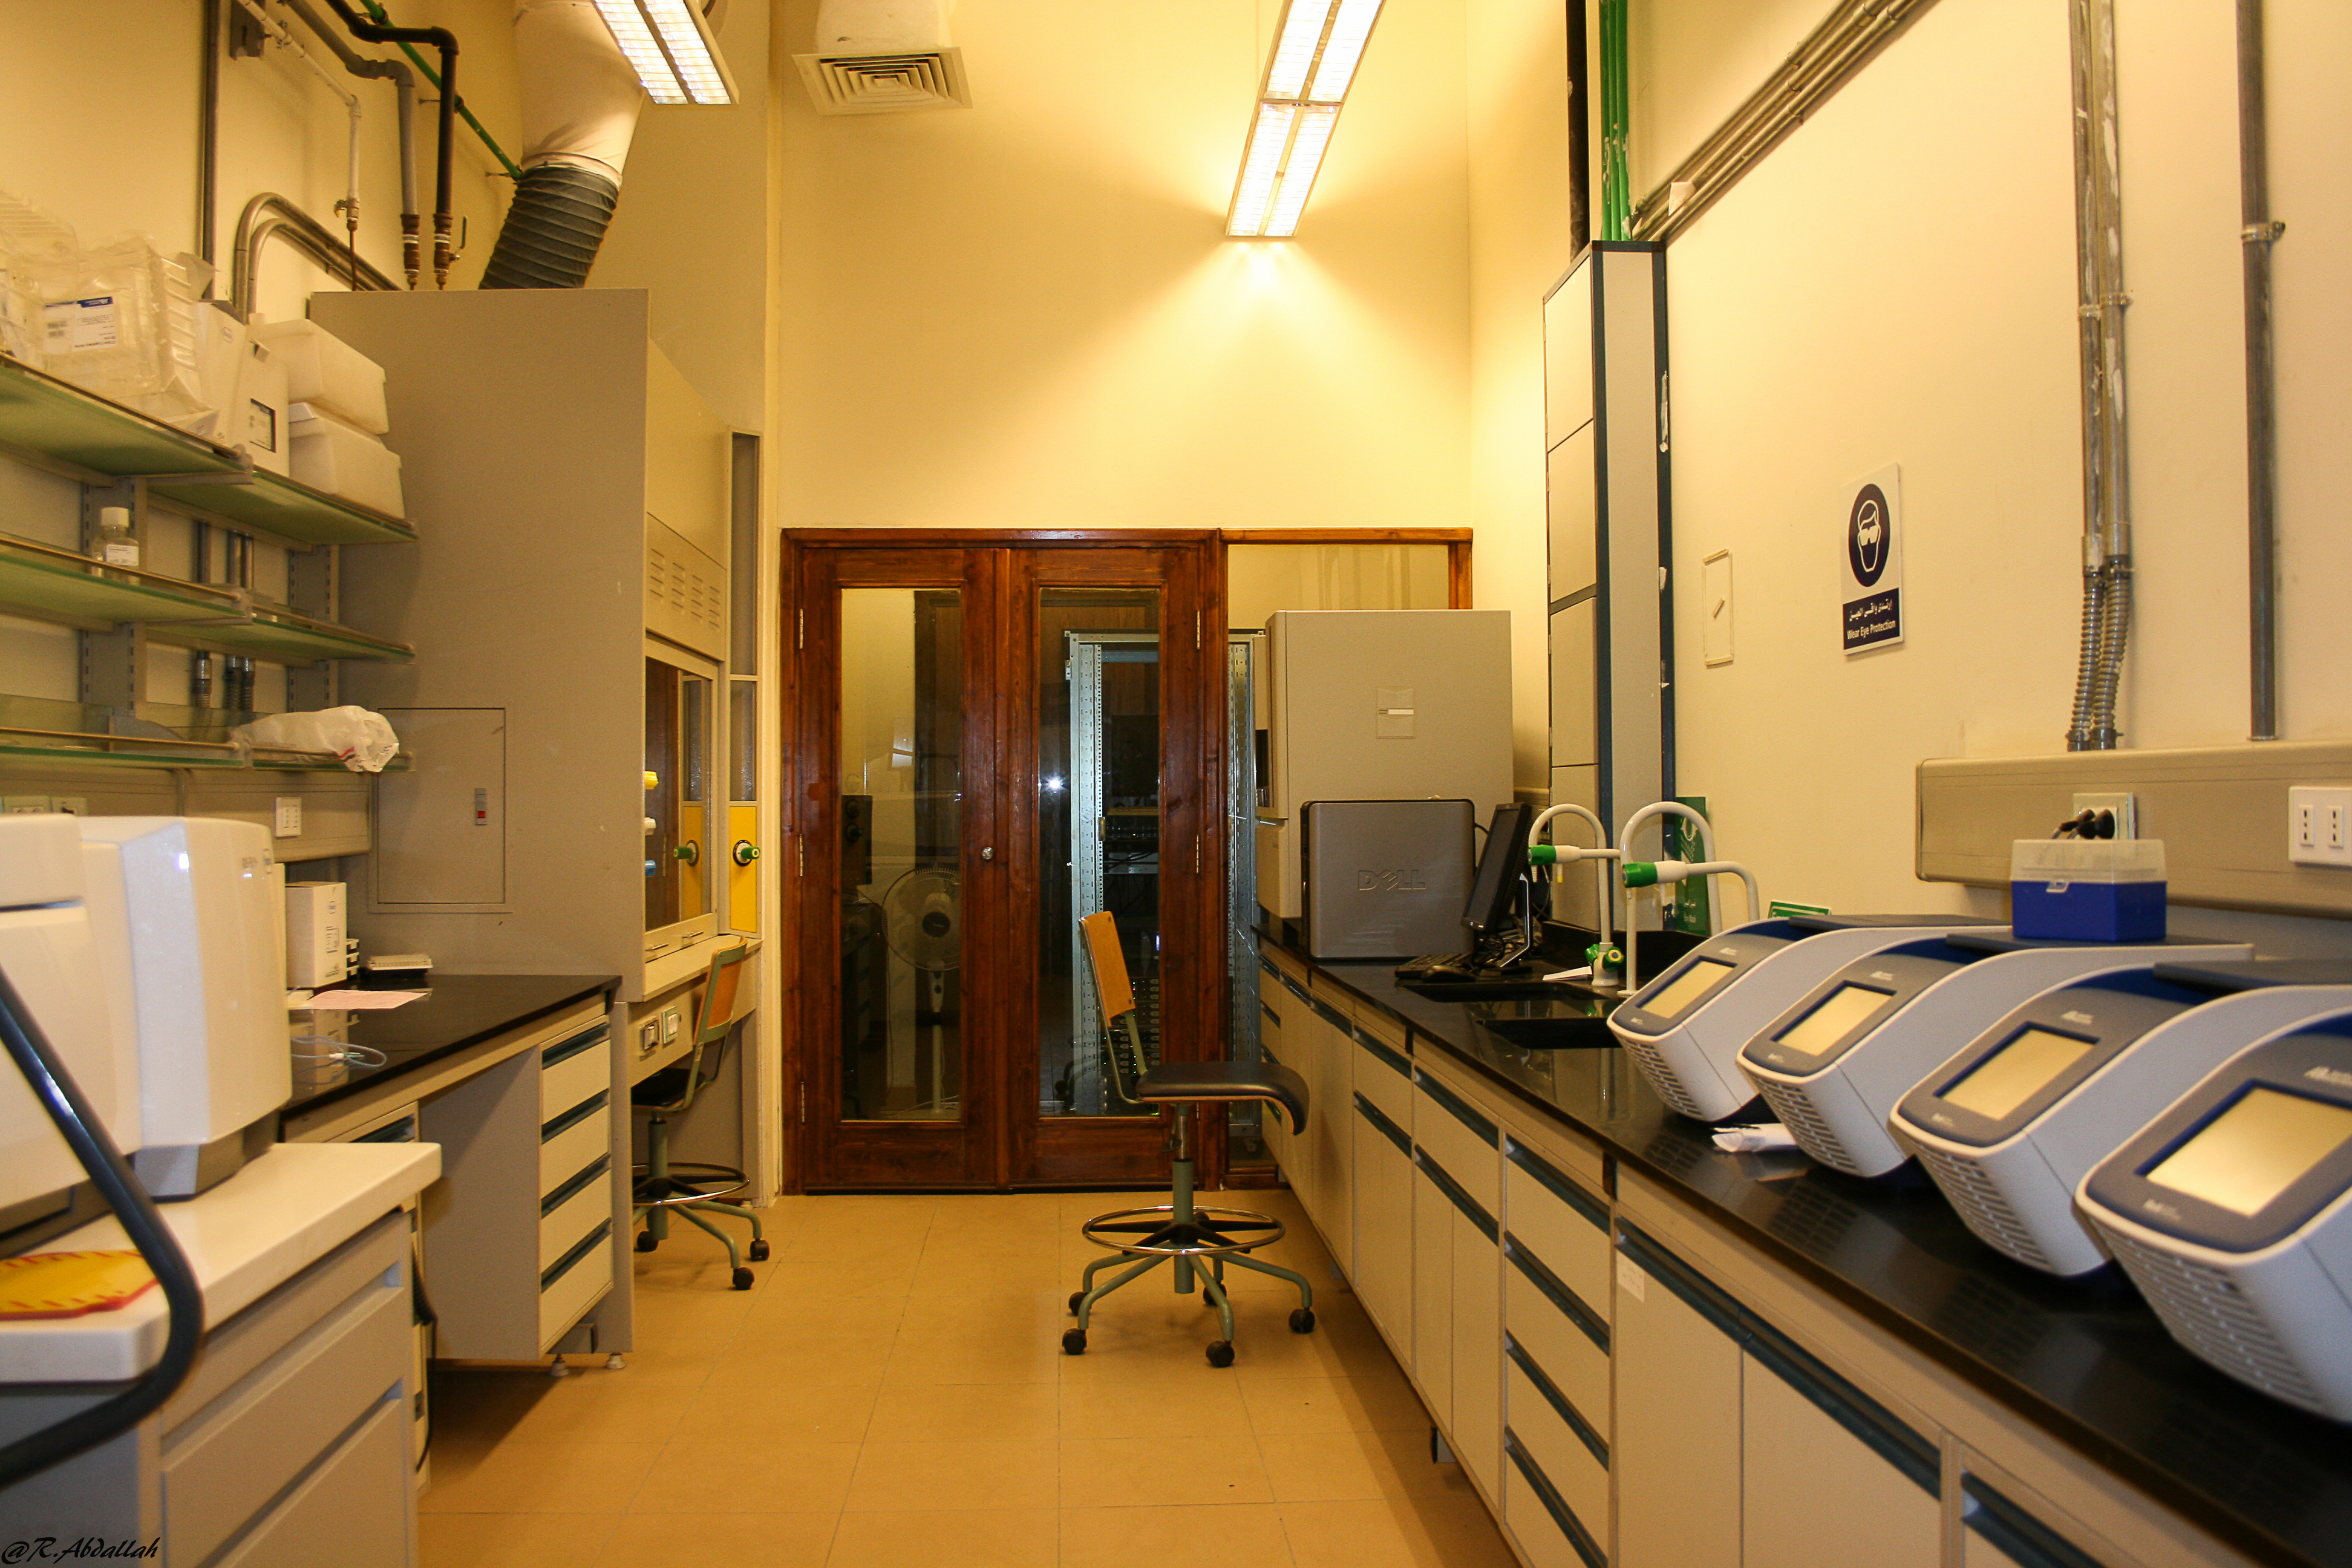 Genomic facility